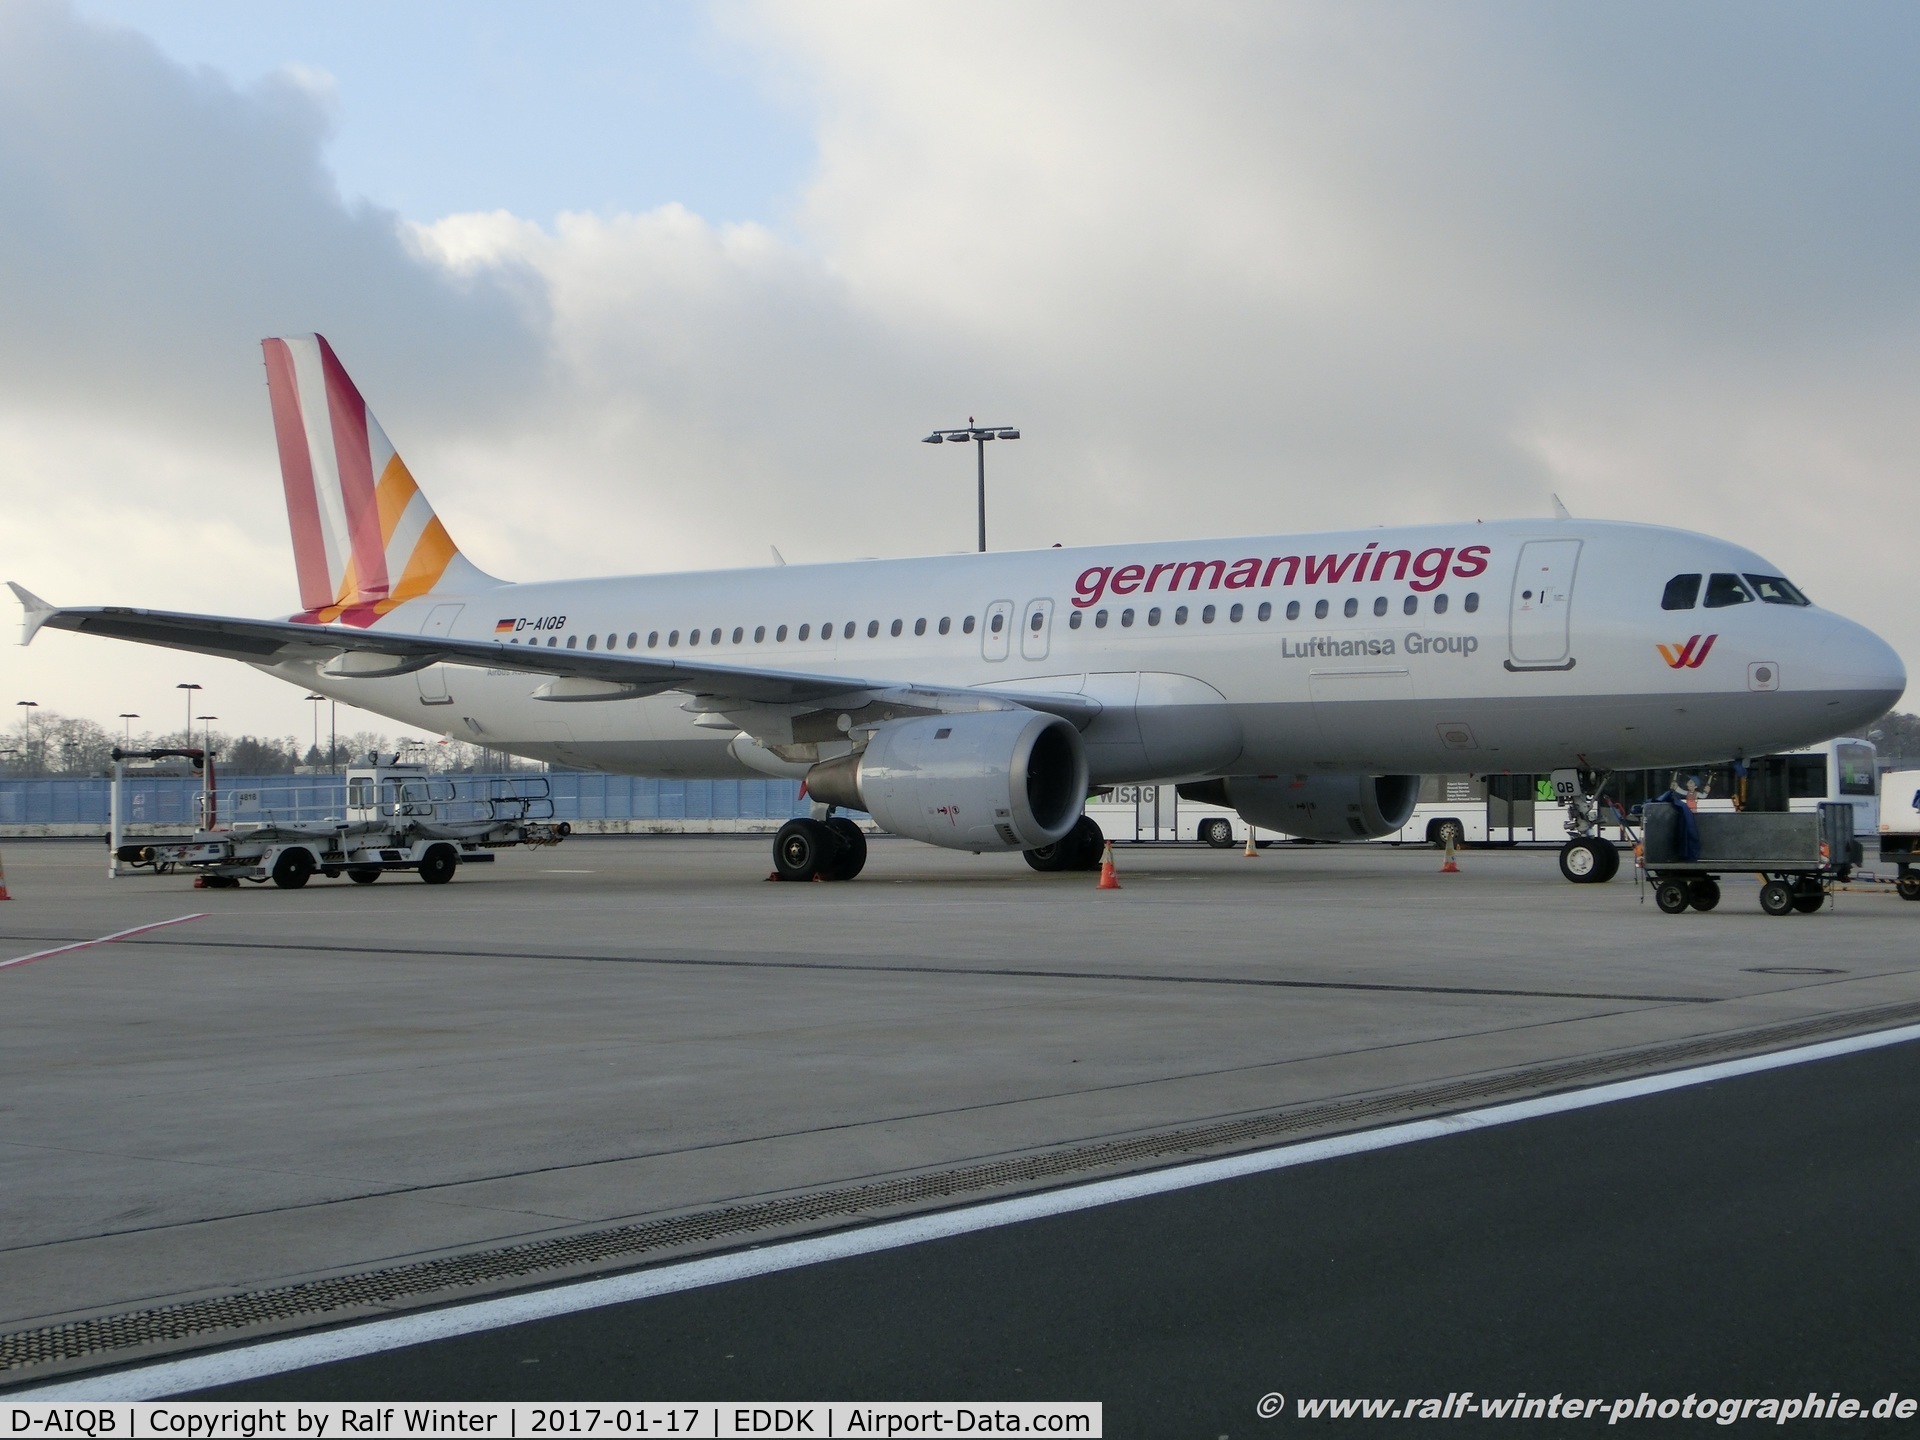 D-AIQB, 1991 Airbus A320-211 C/N 0200, Airbus A320-211 - 4u GWI Germanwings ex Lufthansa 'Bielefeld' - 200 - D-AIQB - 17.01.2017 - CGN